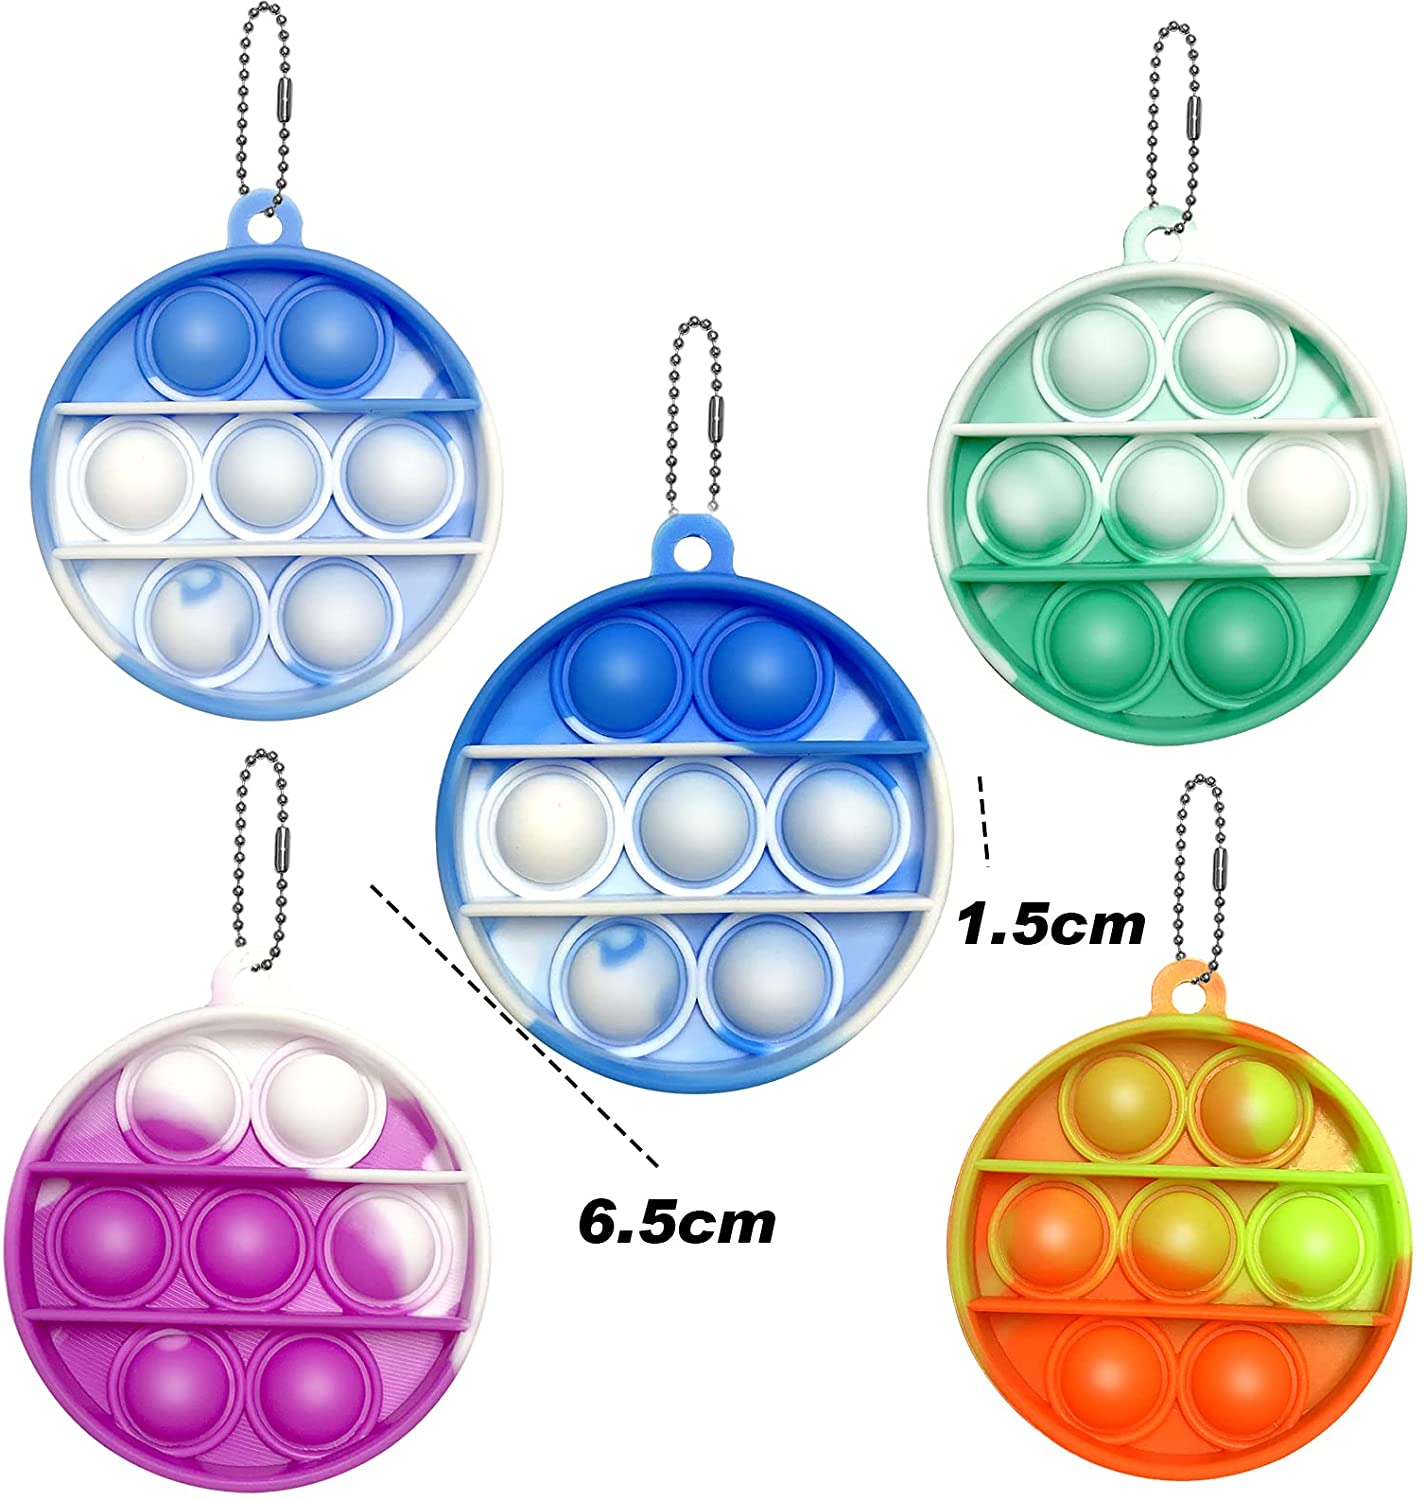 Đồ chơi nhấn bóng khí mini nhiều màu sắc bằng silicone có móc khóa dành cho cả người lớn và trẻ em